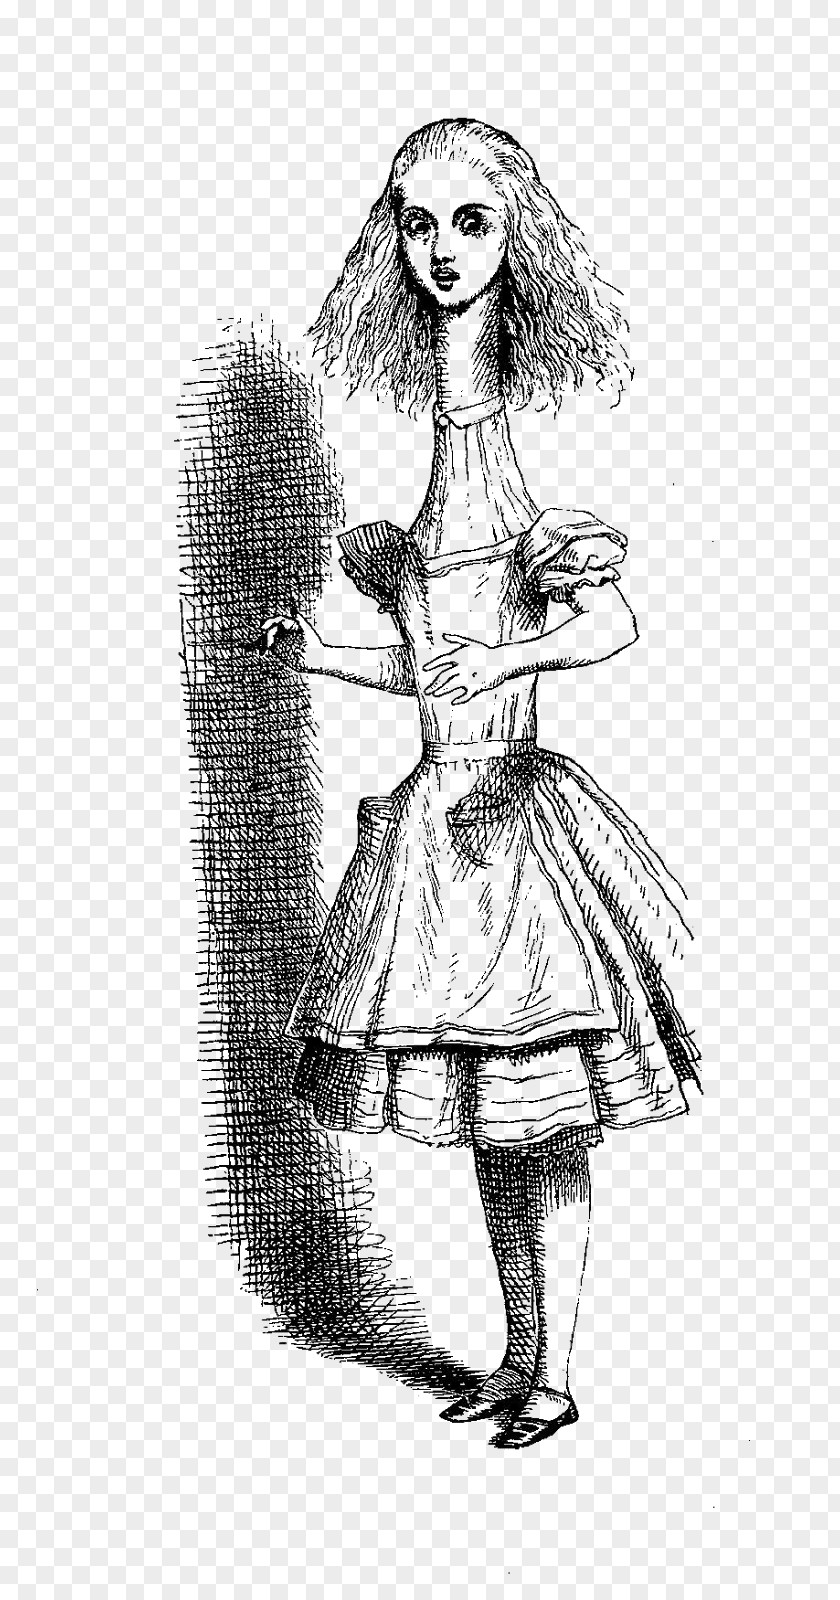 Alice In Wonderland Alice's Adventures John Tenniel Aliciae Per Speculum Transitus Cheshire Cat PNG